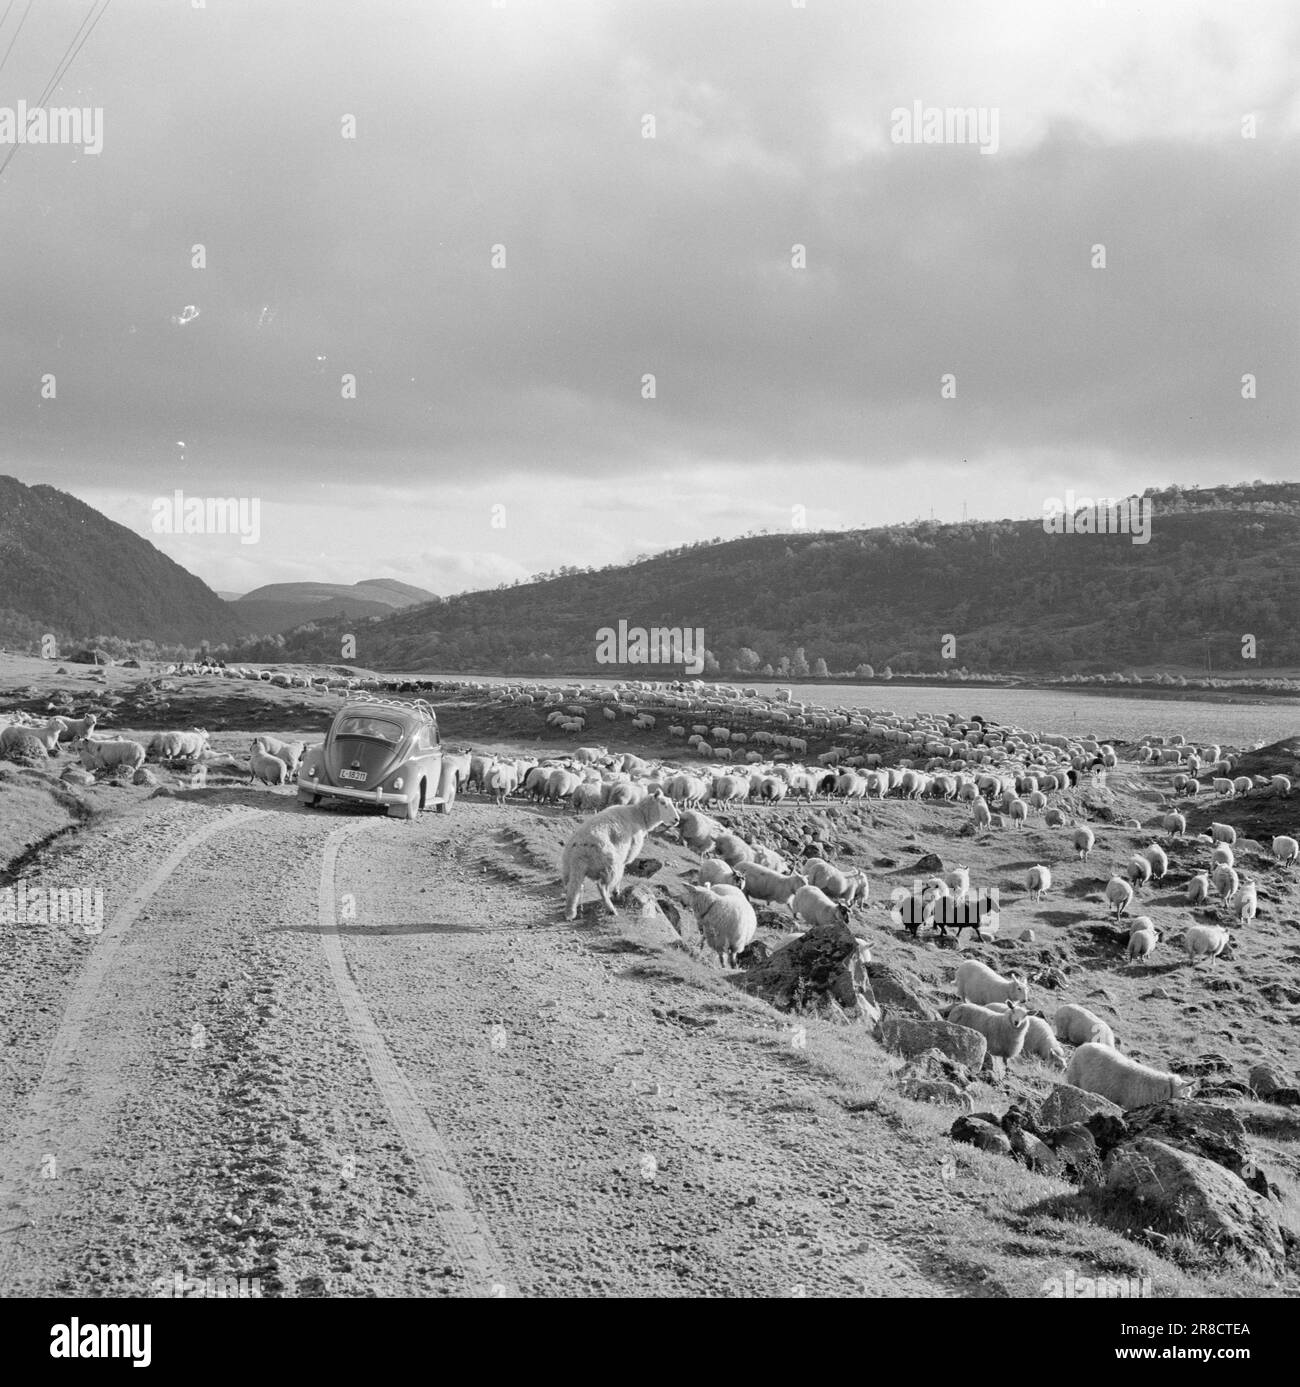 Actuel 42-1-1960: Bye Bye!! L'été est terminé. Troupeau de moutons à Sirdal. Les moutons sont ramenés du pâturage d'été. Kilomètre après kilomètre, le ruisseau de chair du détroit se déforme dans la vallée. Tandis que les fermes de moutons sont sur leur chemin vers les pots de viande, d'autres trafics doivent céder la place. Photo: Ivar Aaserud / Aktuell / NTB ***PHOTO NON TRAITÉE*** Banque D'Images